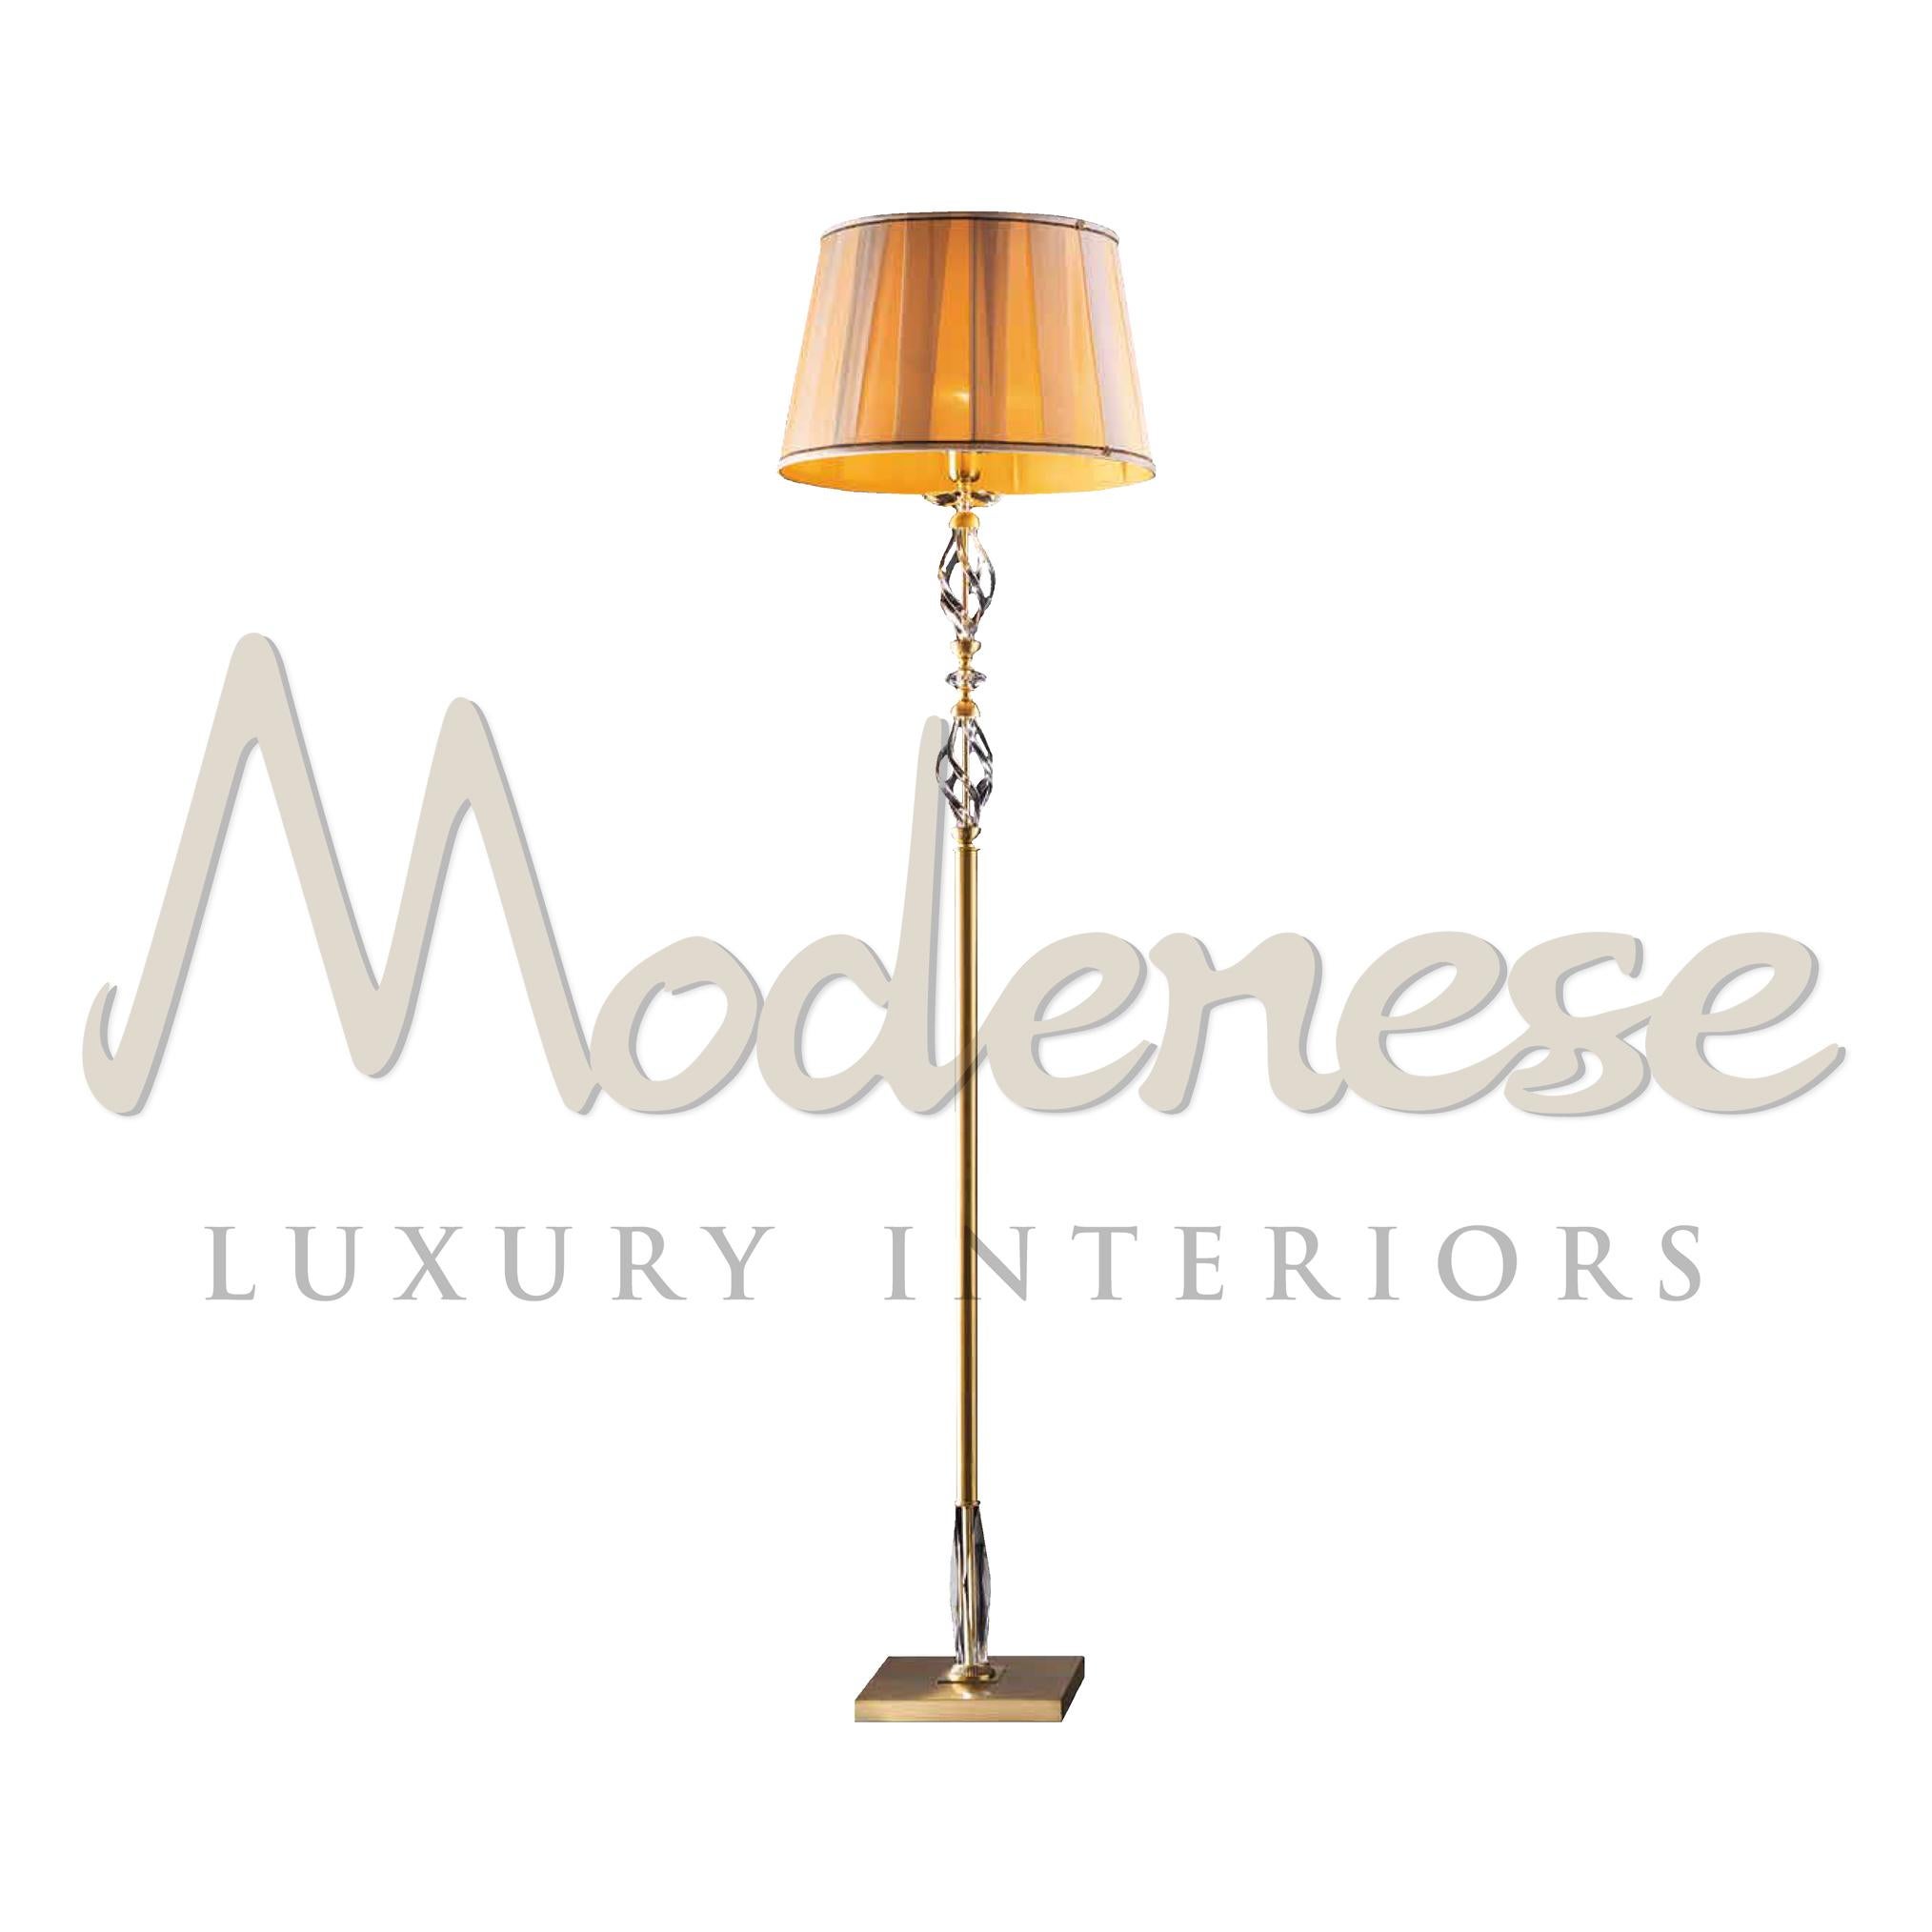 Les lampadaires d'intérieur de luxe Modenese Gastone sont basés sur le style des inspirations anciennes des riches salons rococo' et baroques. Fusionnant une finition métallique en or satiné, un cristal transparent et un abat-jour, ce modèle est une